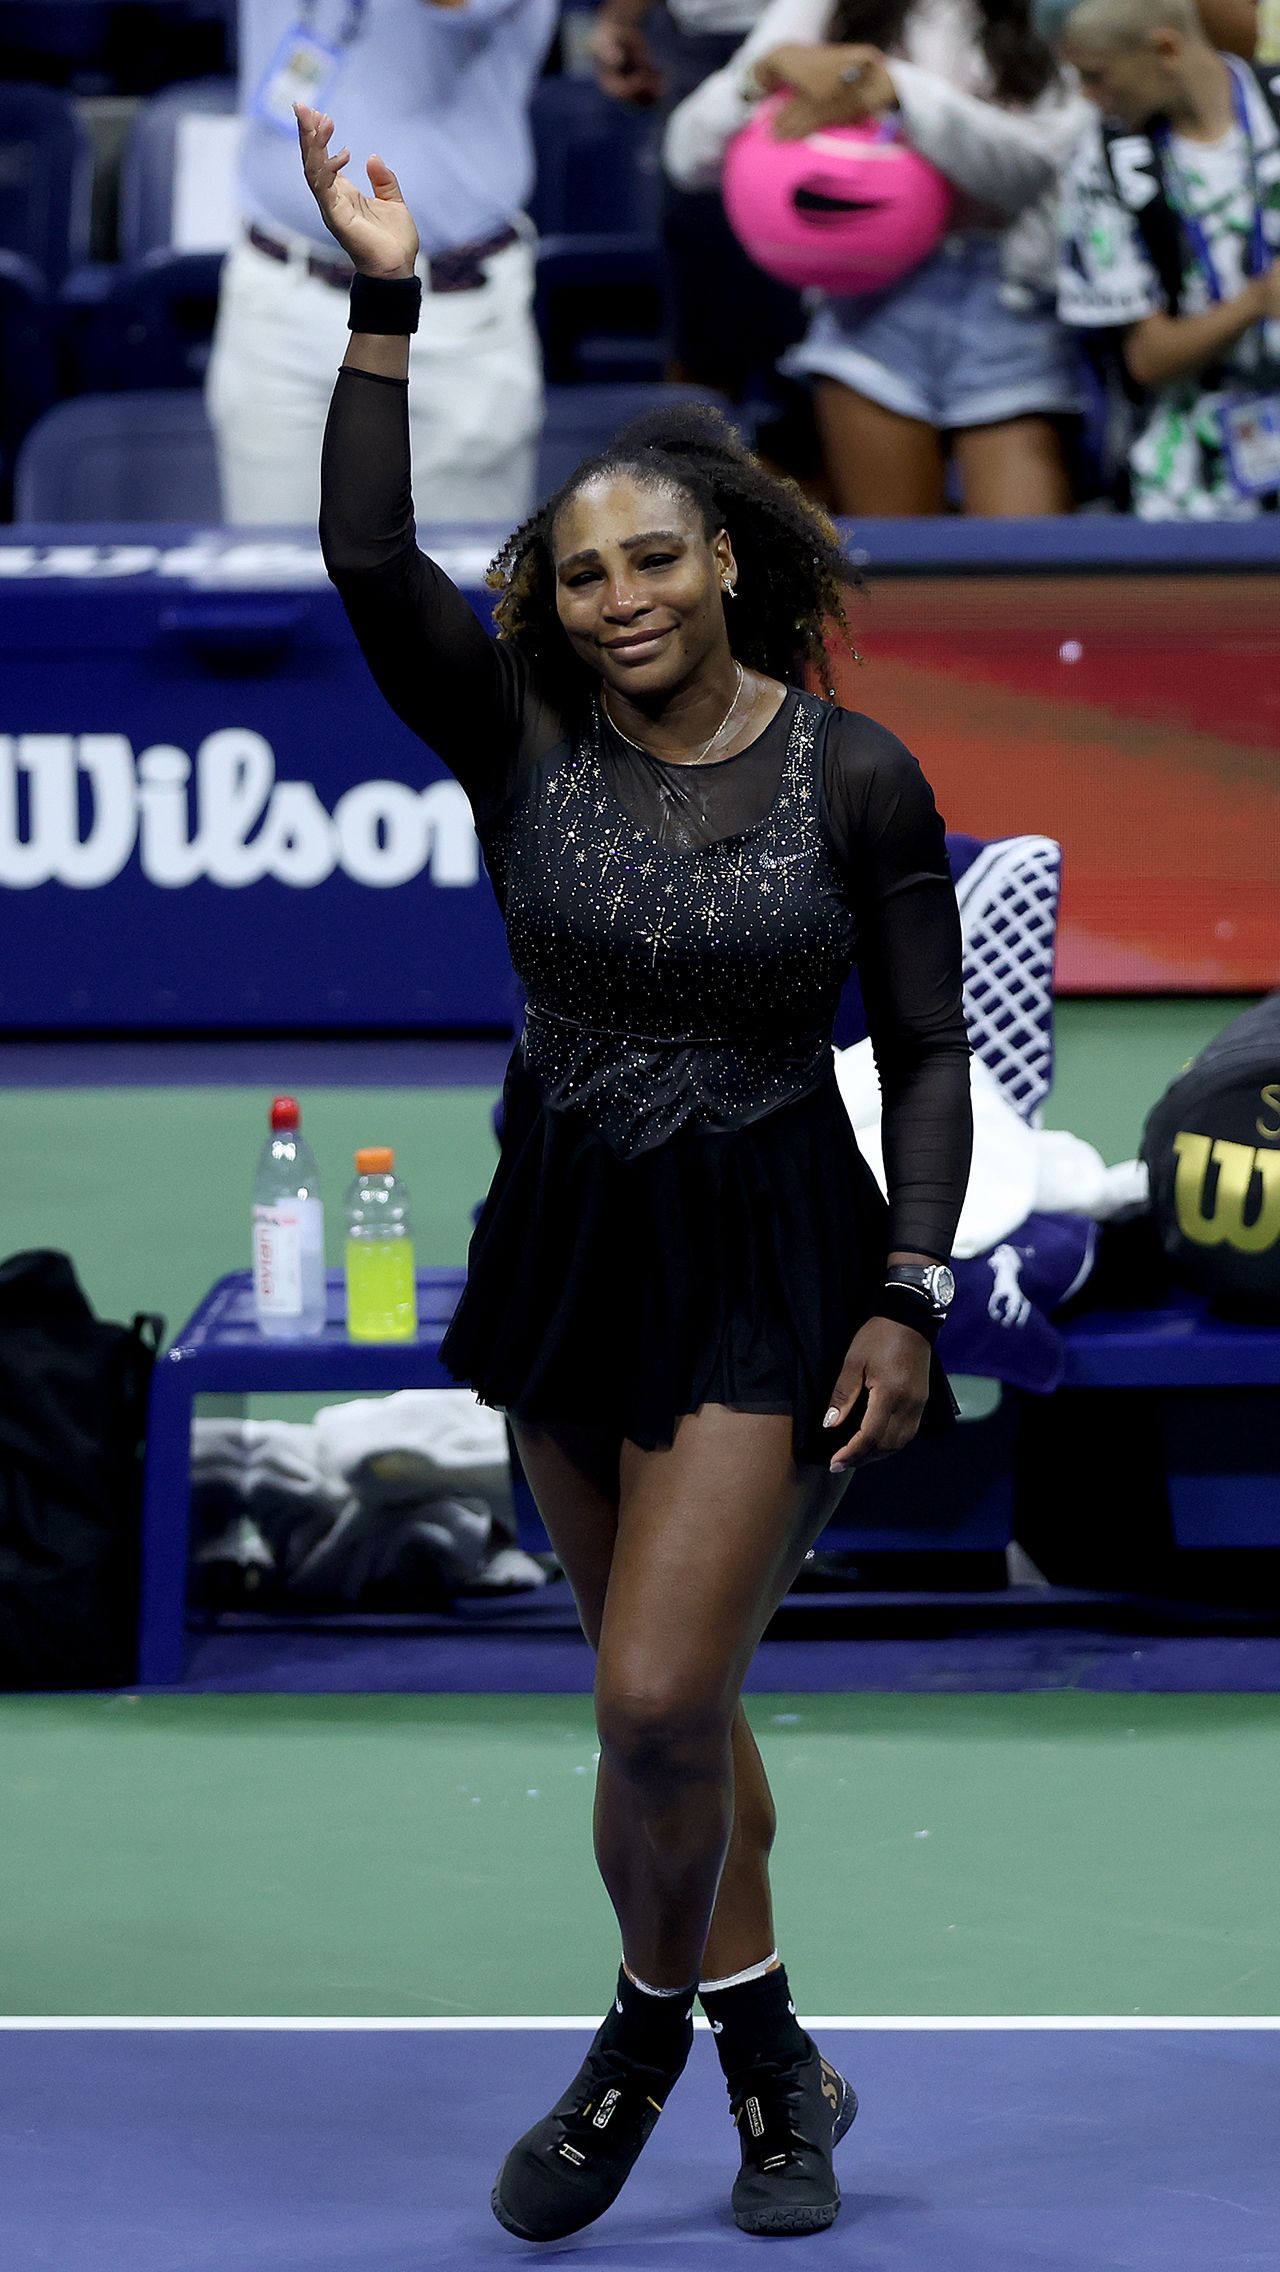 На прощальный US Open Серена Уильямс надела свой лучший наряд — чёрный костюм, украшенный несколькими сотнями бриллиантов. Она по-настоящему блистала.